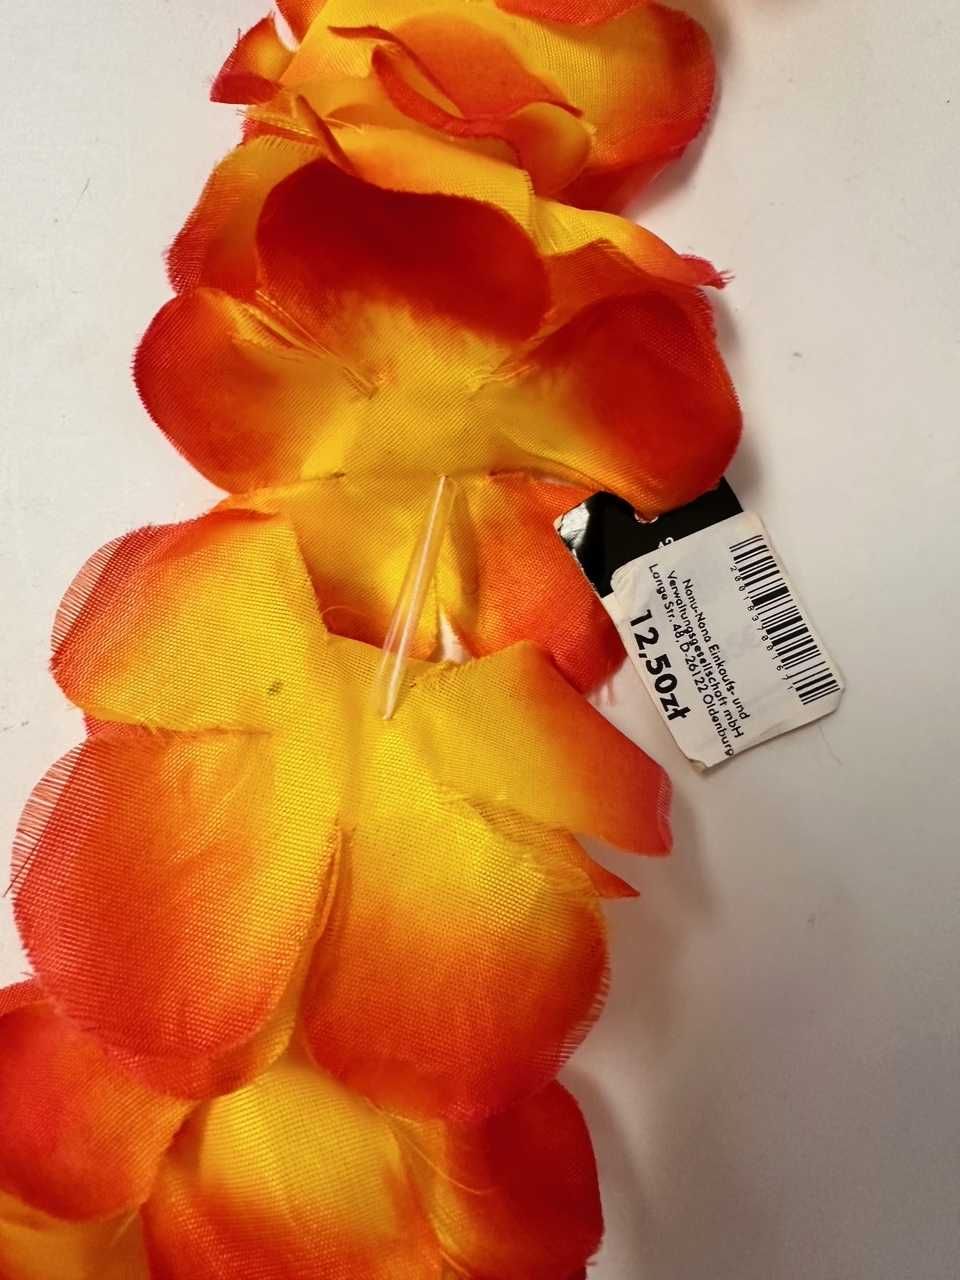 Hawajska girlanda, naszyjnik z kwiatów, 110 cm